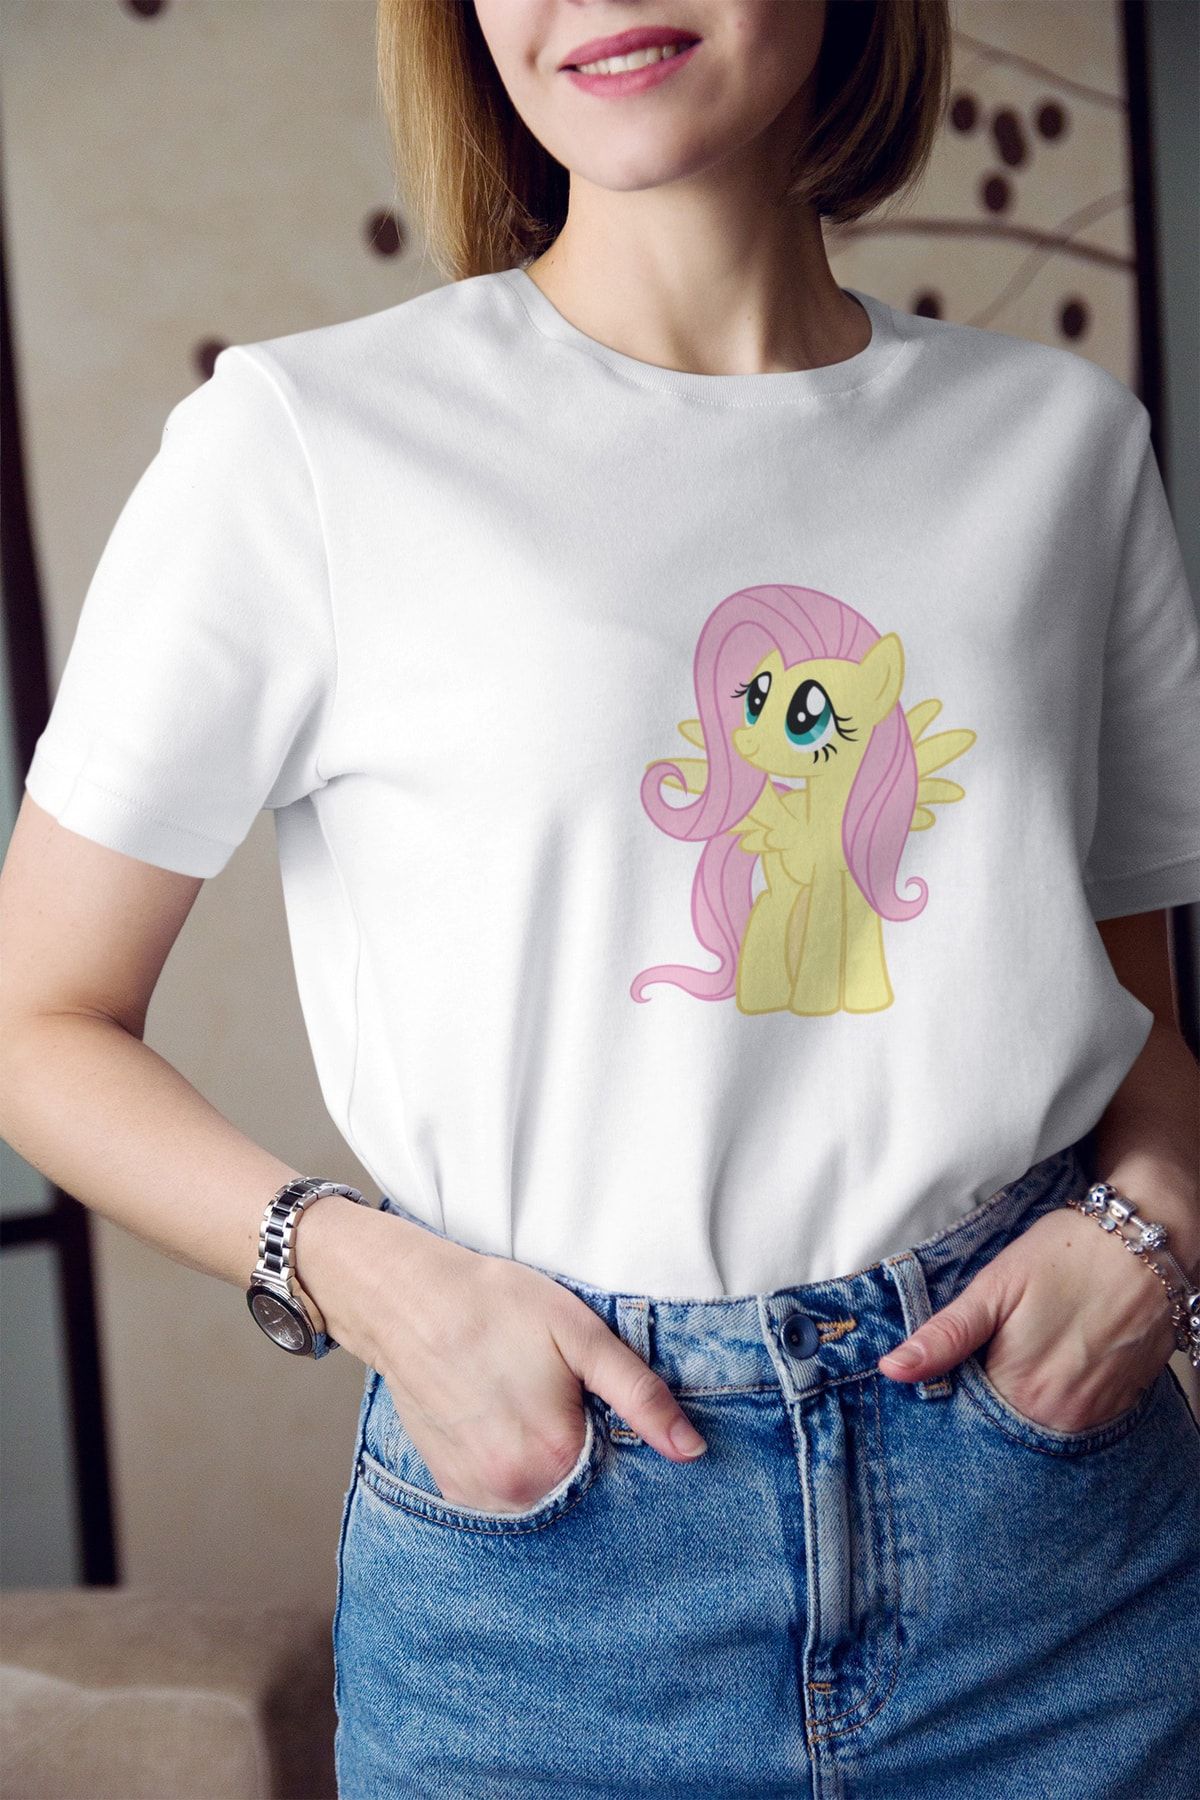 Kio Tasarım My Little Pony Fluttershy Baskılı Tişört Kadın